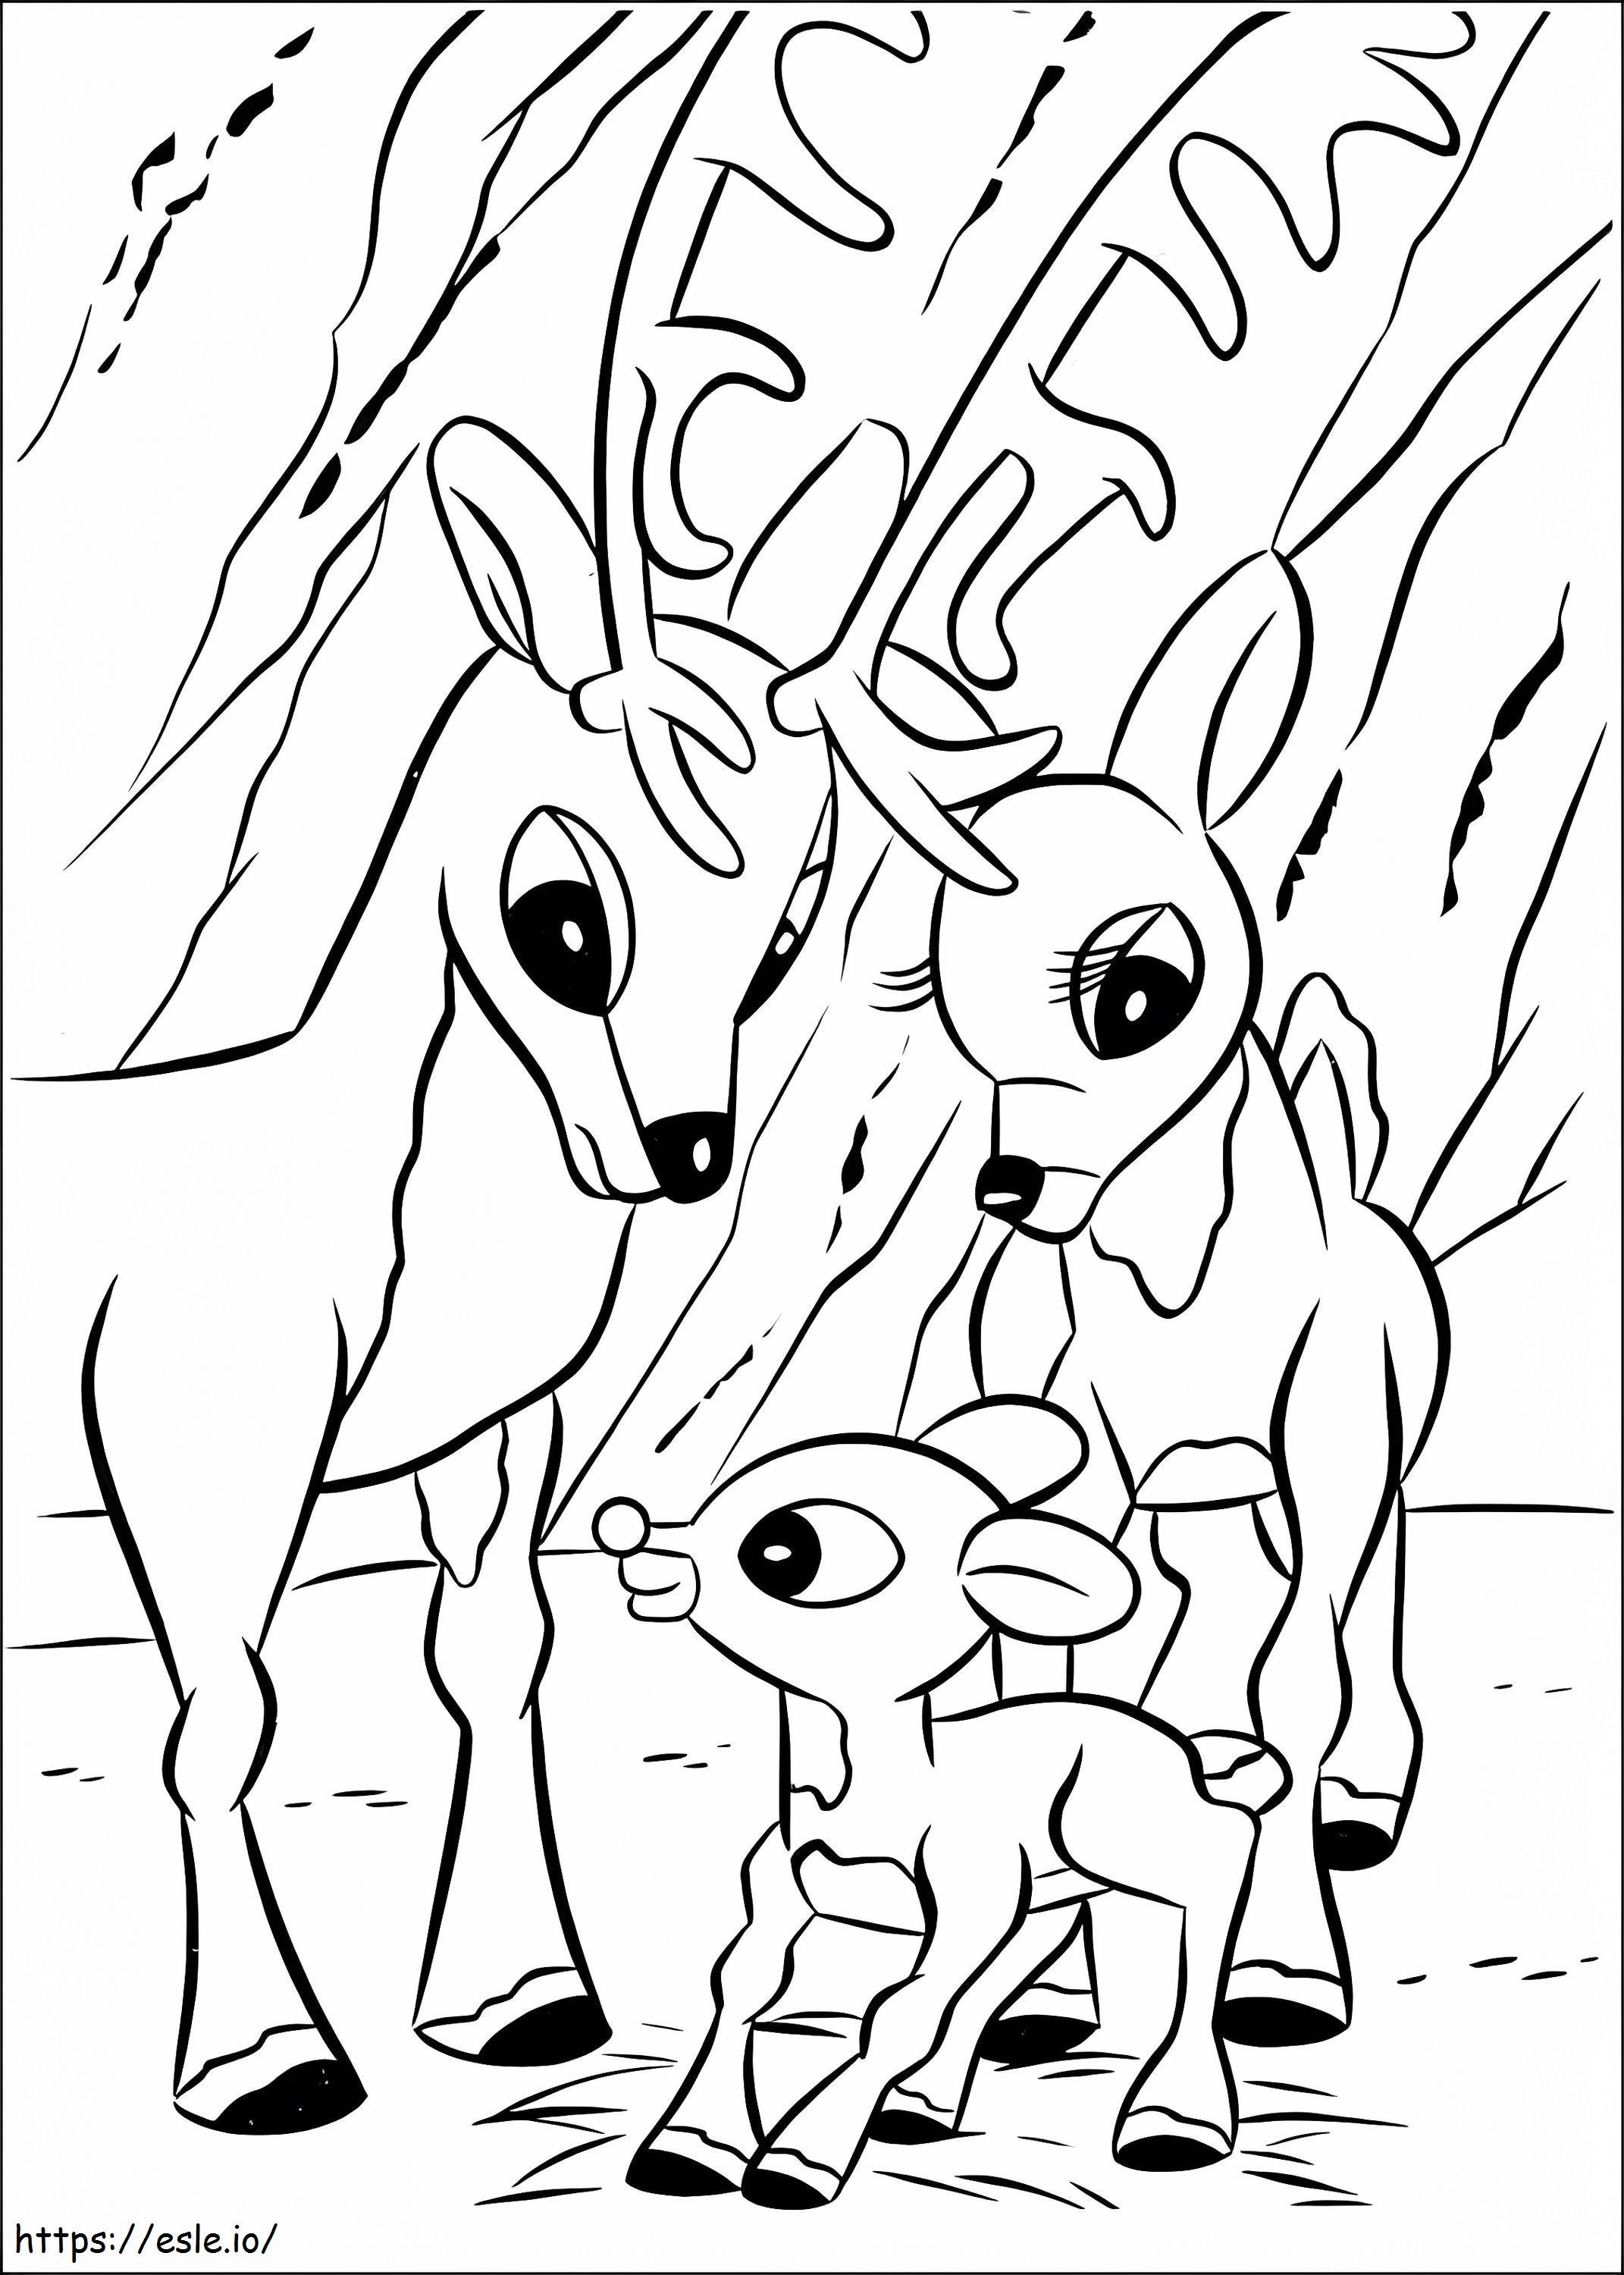 Rudolf i rodzina kolorowanka